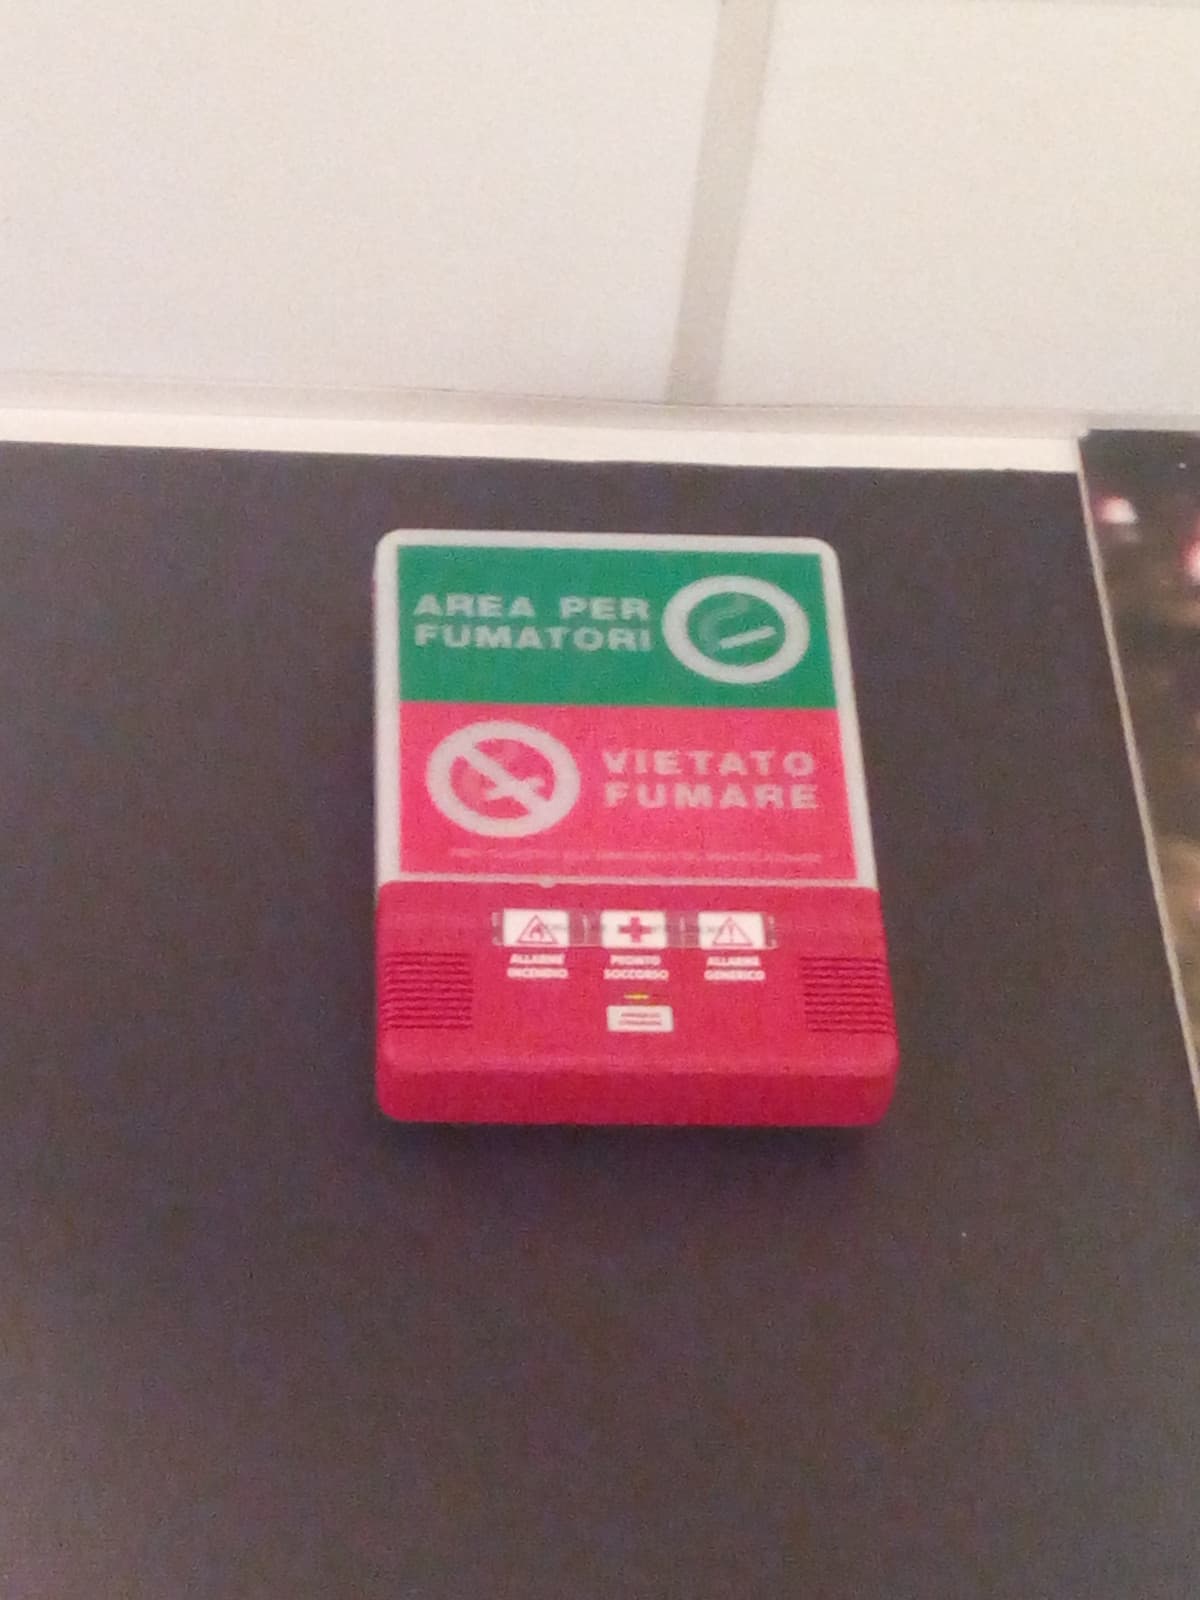 Ho trovato, questo cartello a un negozio di mobili dentro un area fumatori e l'ho fotografato da fuori ? "area fumatori / vietato fumare" ??